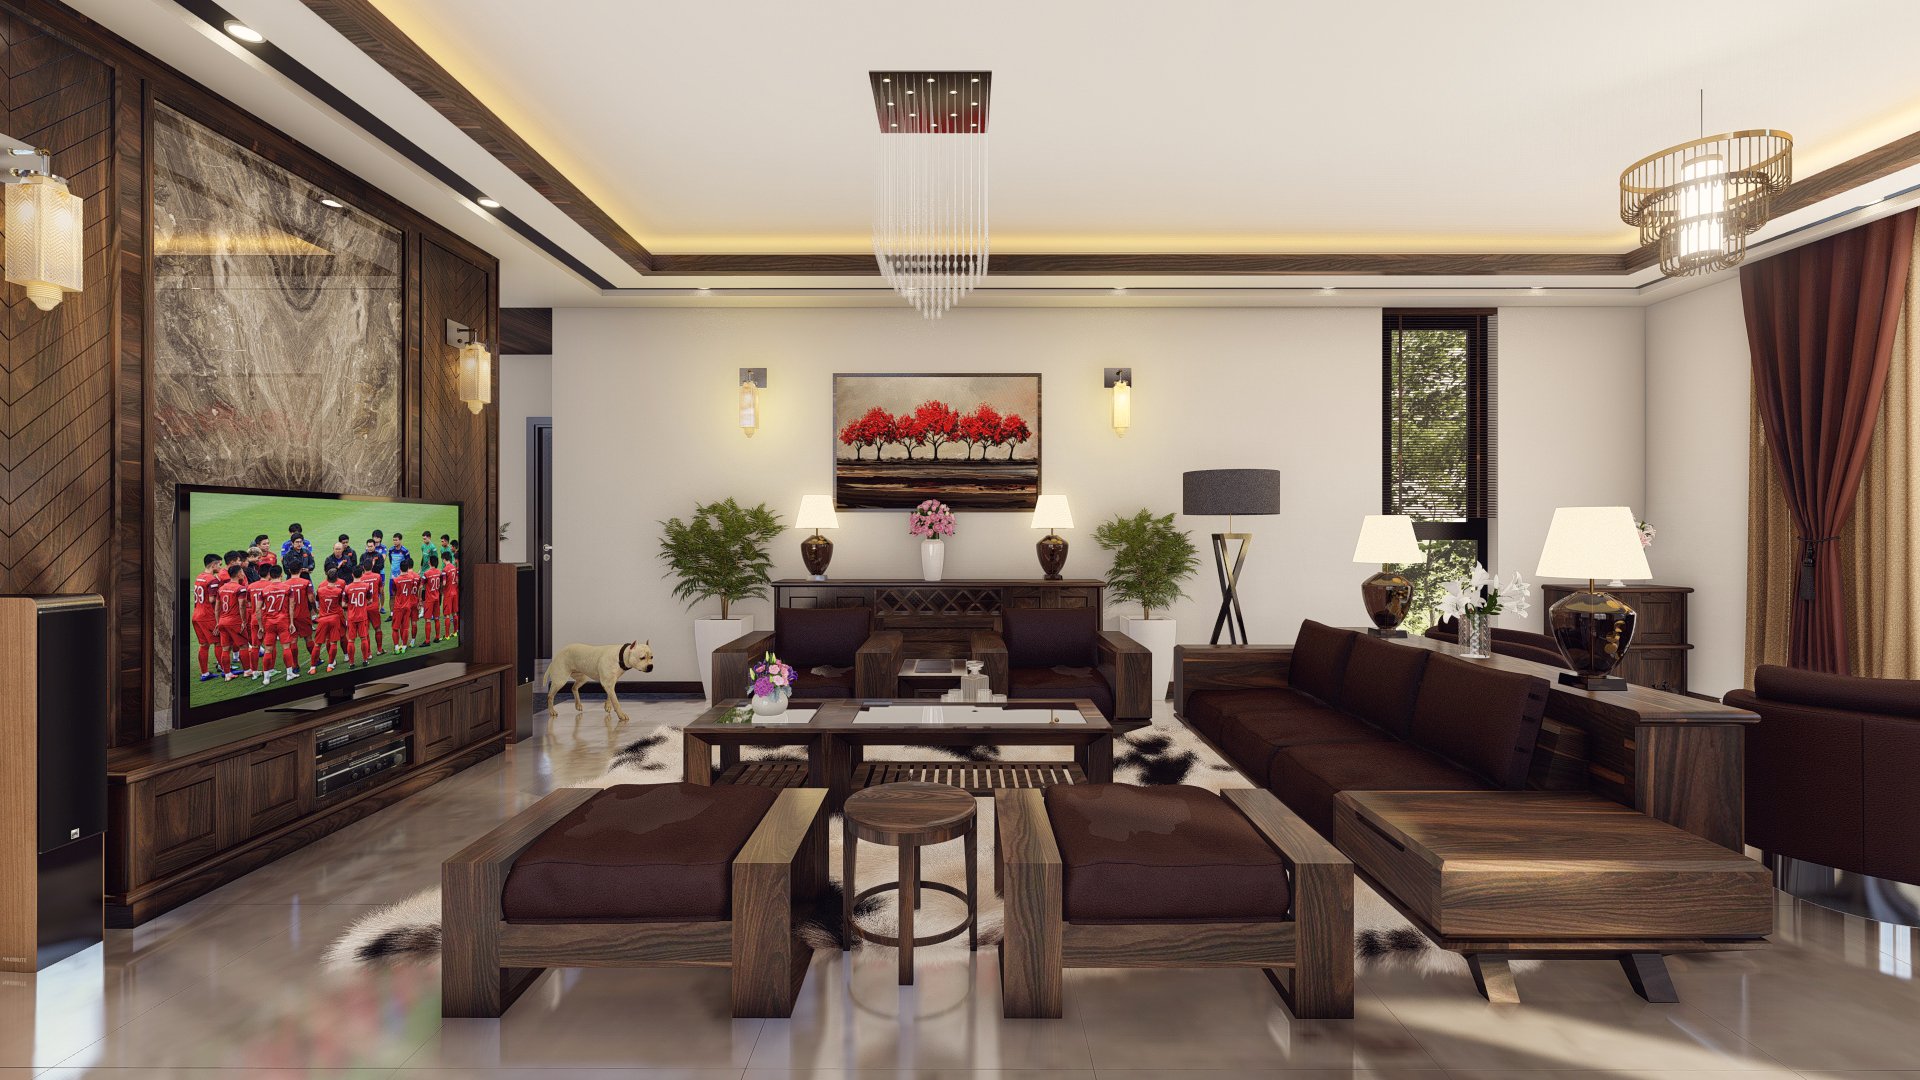 Thiết kế nội thất Biệt Thự tại Thanh Hóa Thiết kế nội thất biệt thự Yên Định. 1576577194 0